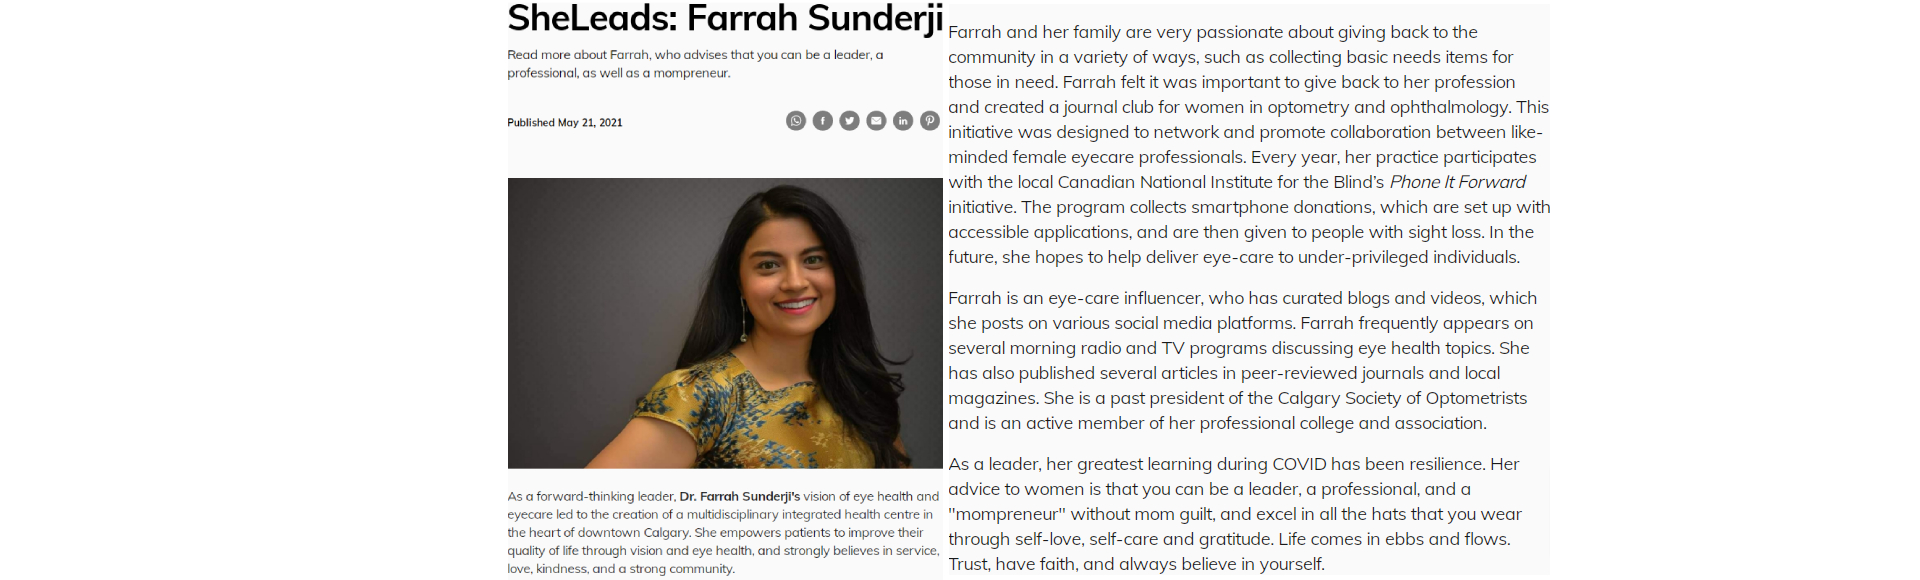 SheLeads: Farrah Sunderji